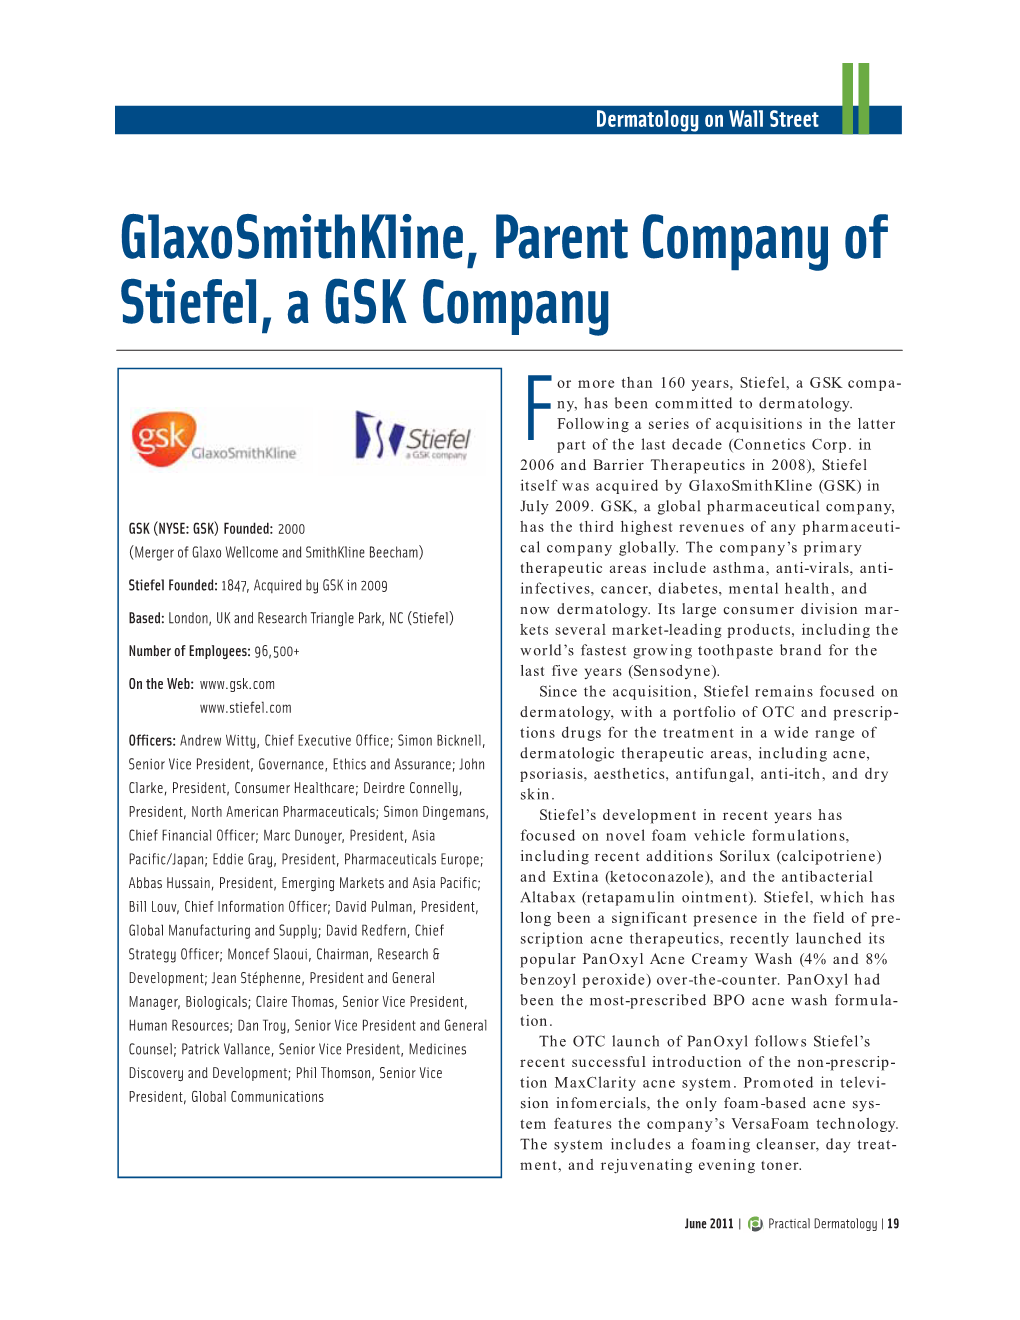 Glaxosmithkline, Parent Company of Stiefel, a GSK Company